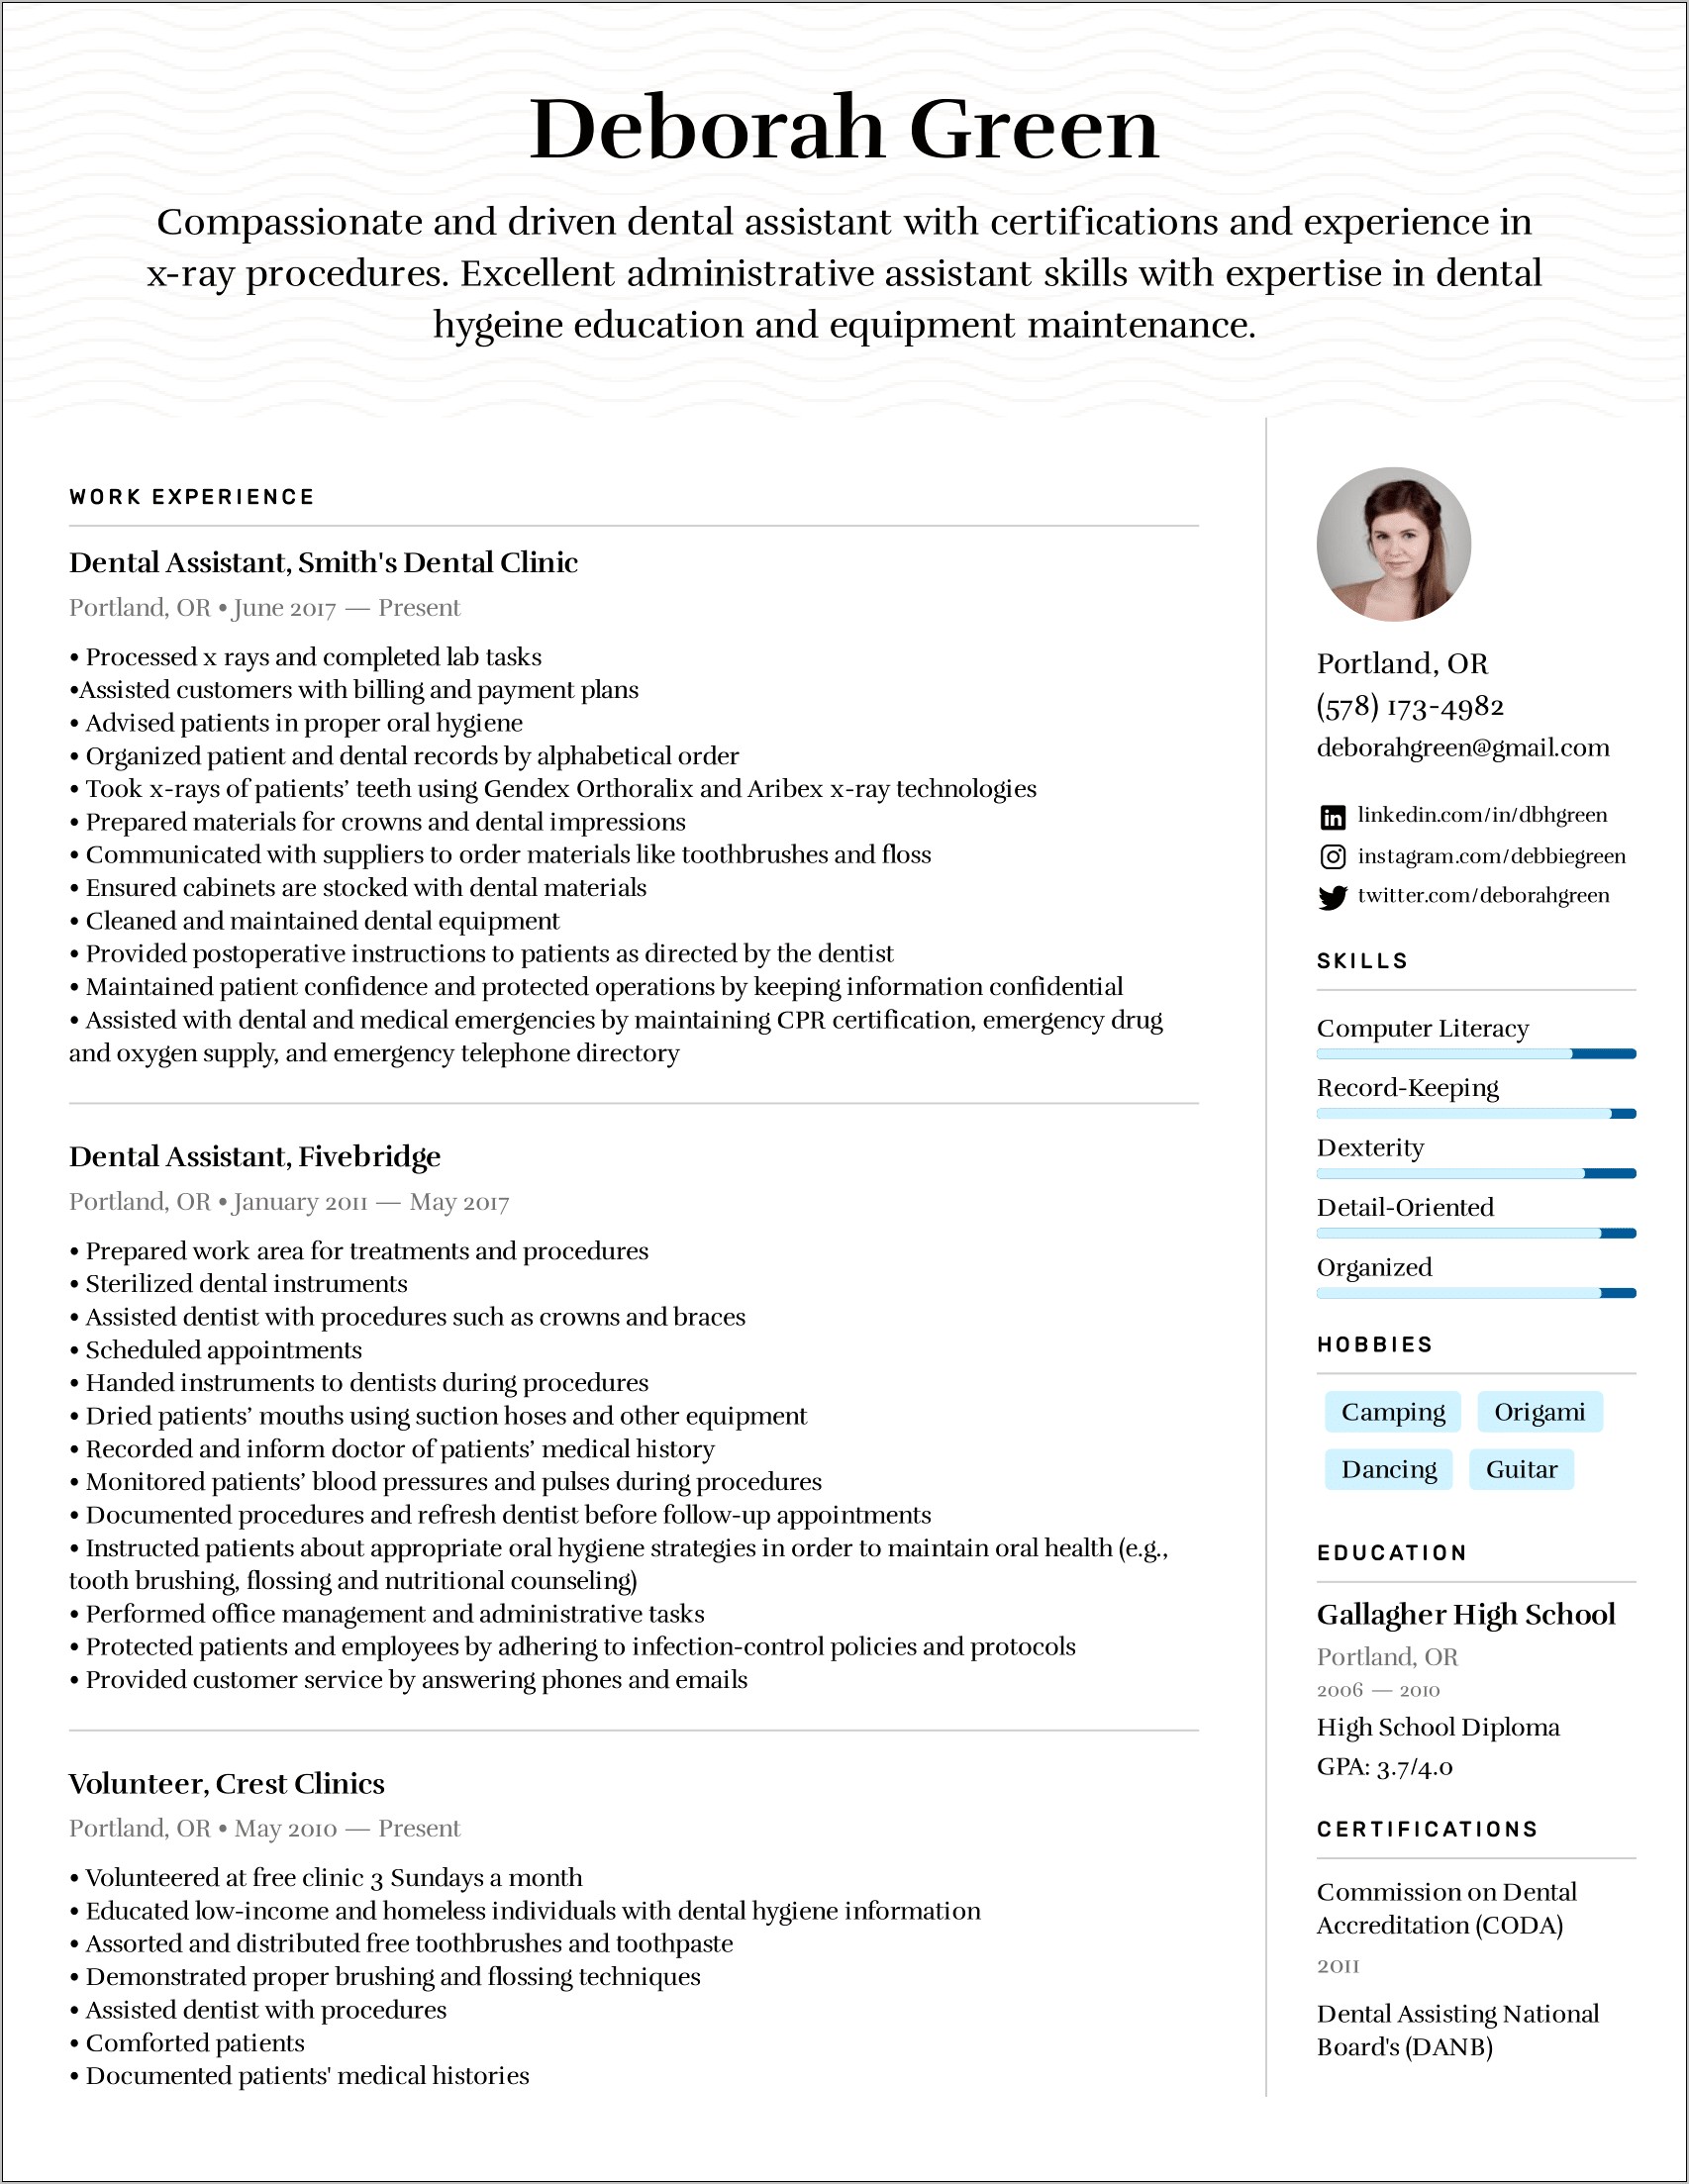 Resume For Applying To Dental School